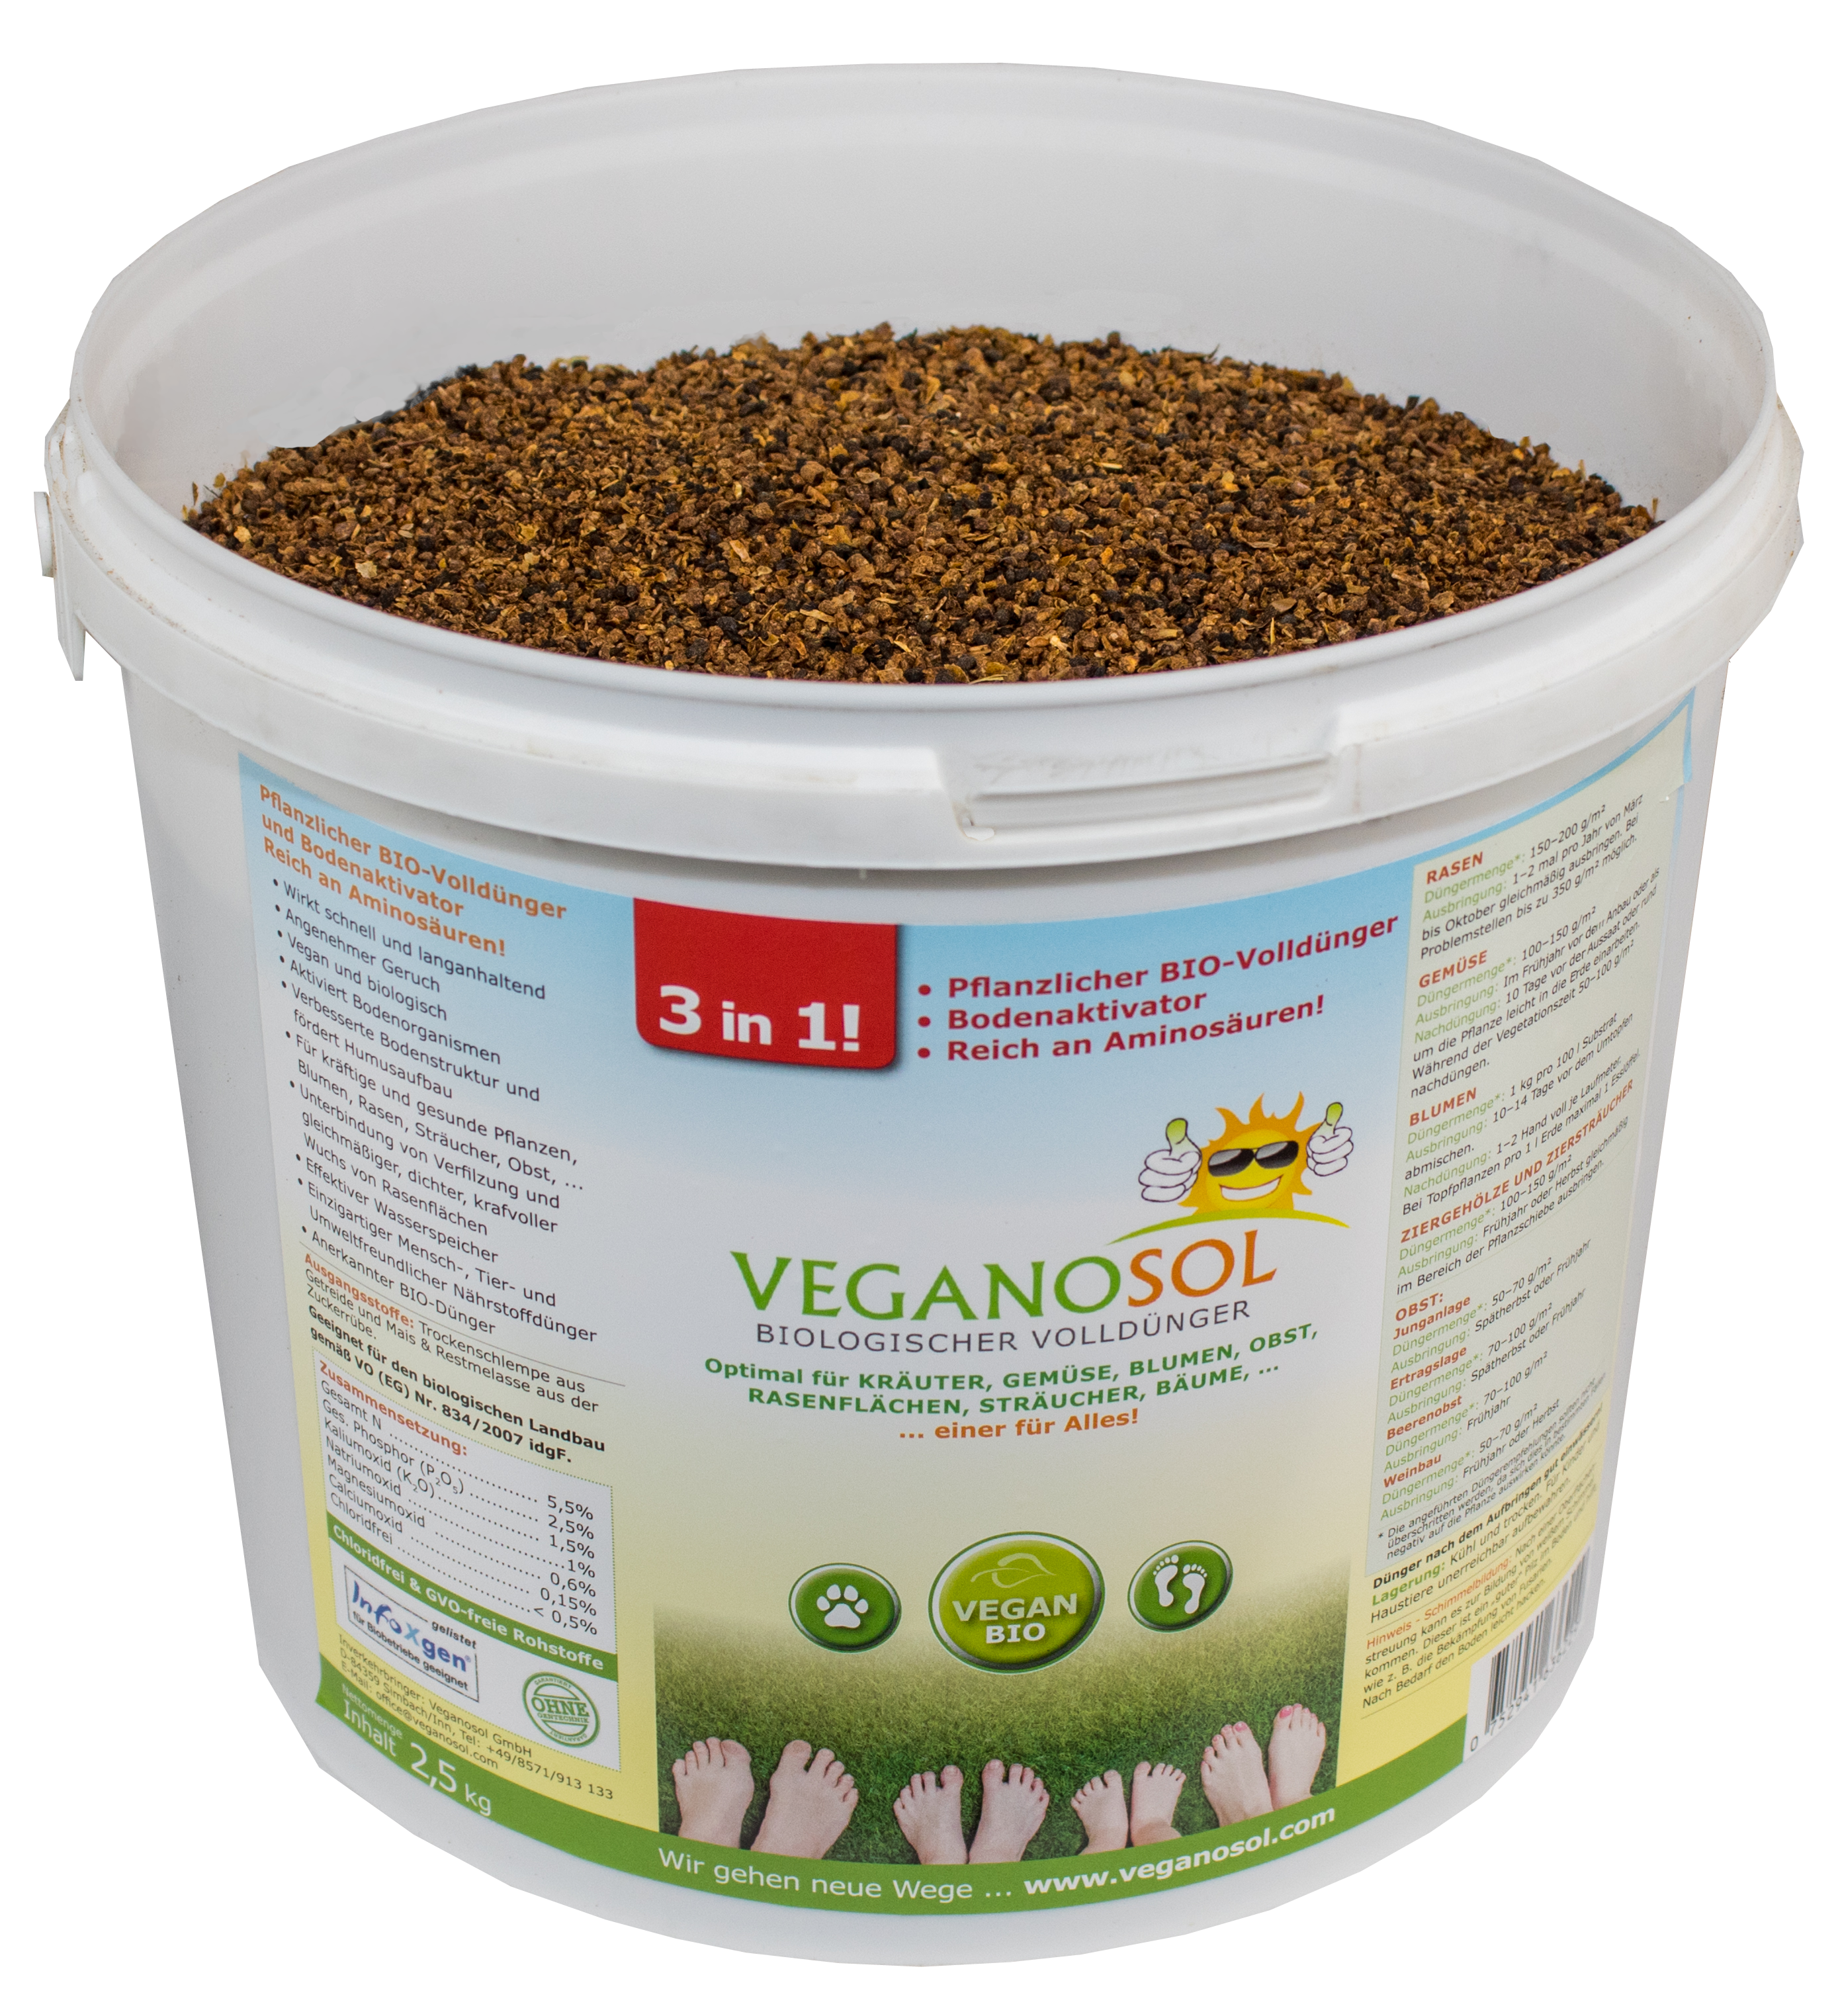 Veganosol organischer Volldünger und  Bodenaktivator 0,2mm, Eimer 2,5kg